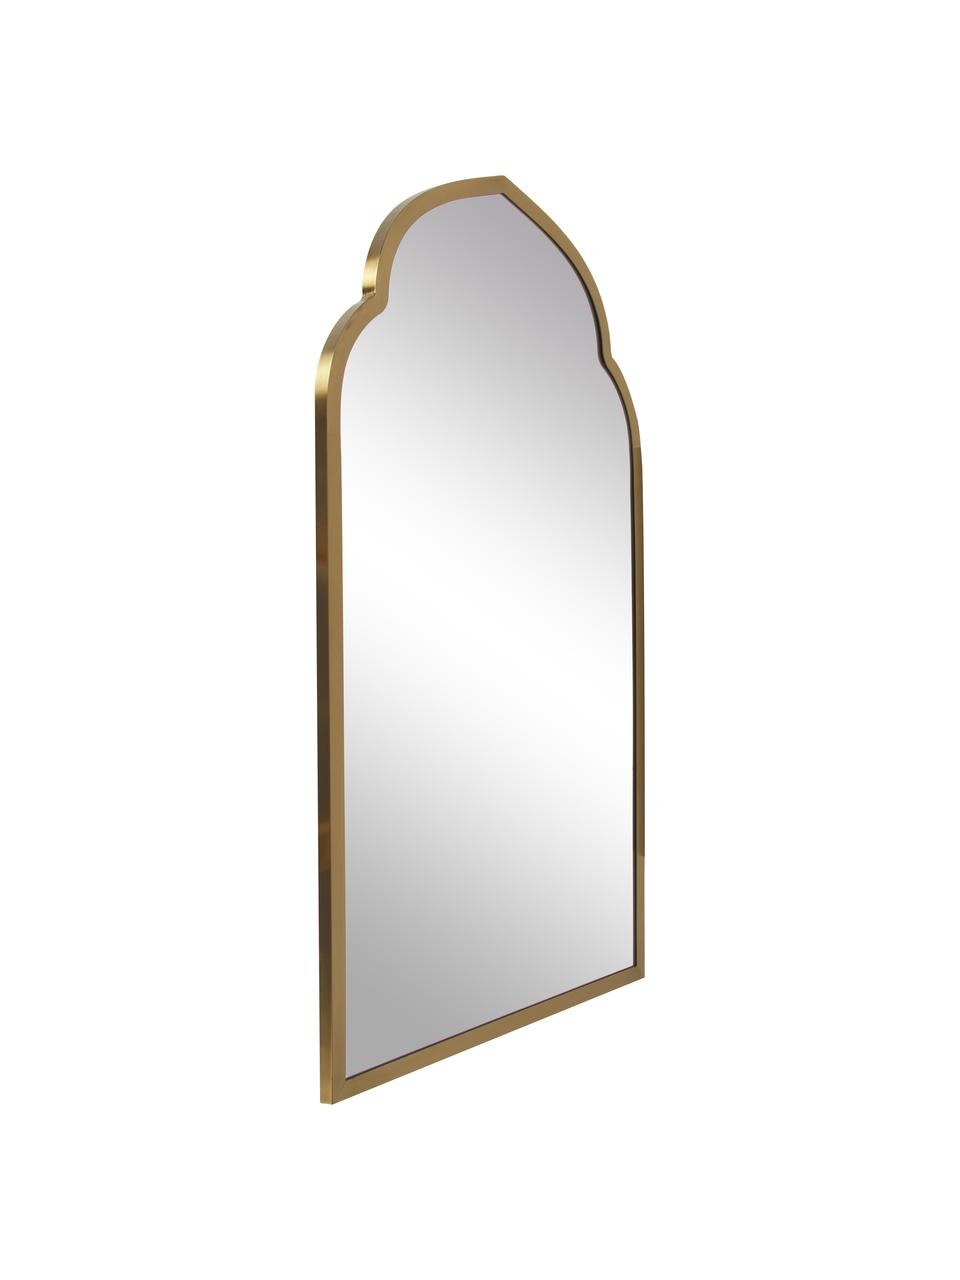 Bogen-Wandspiegel Laviena mit messingfarbenem Metallrahmen, Spiegelfläche: Spiegelglas, Rahmen: Metall, Gold, B 60 x H 100 cm